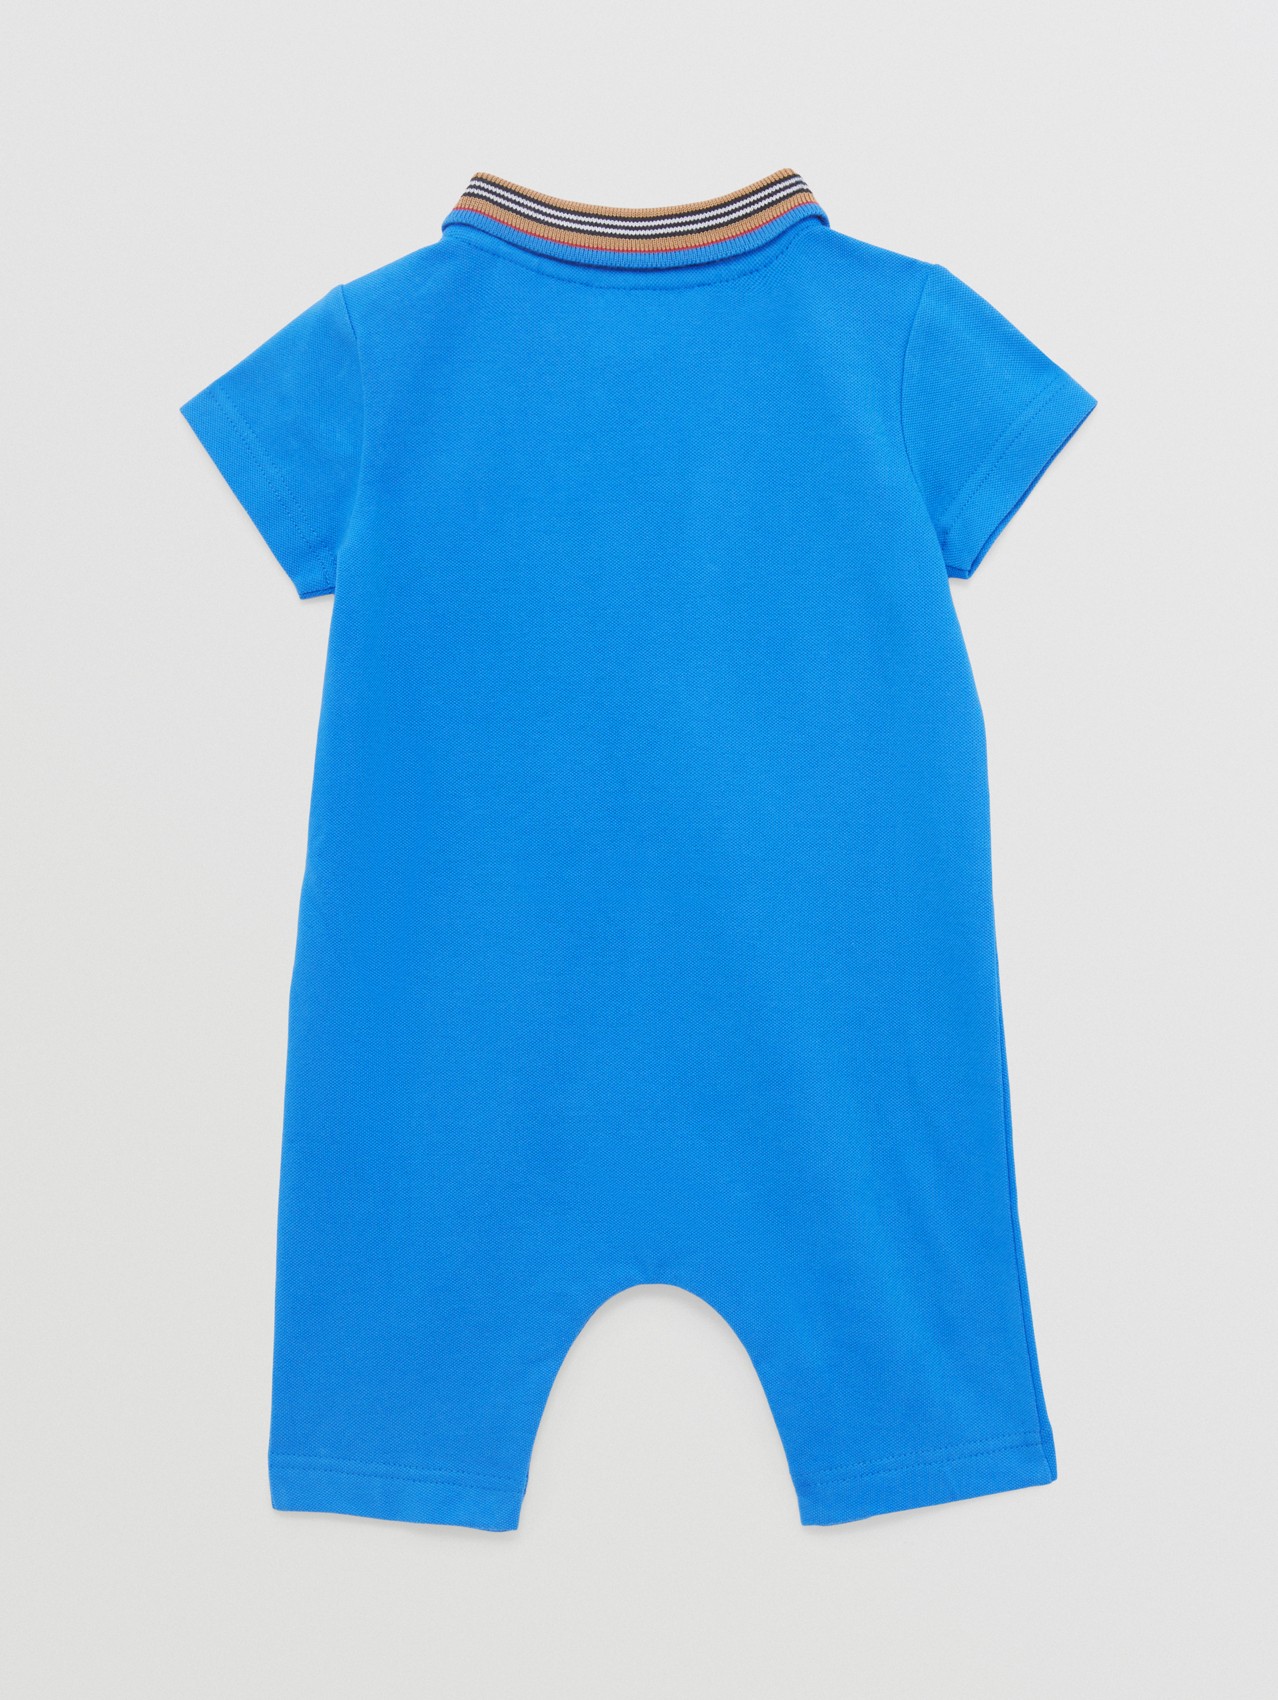 BURBERRY Baby Pantaloni Neonato Blu elettrico Taglia 2 anni 92cm NUOVO CON ETICHETTE 432 